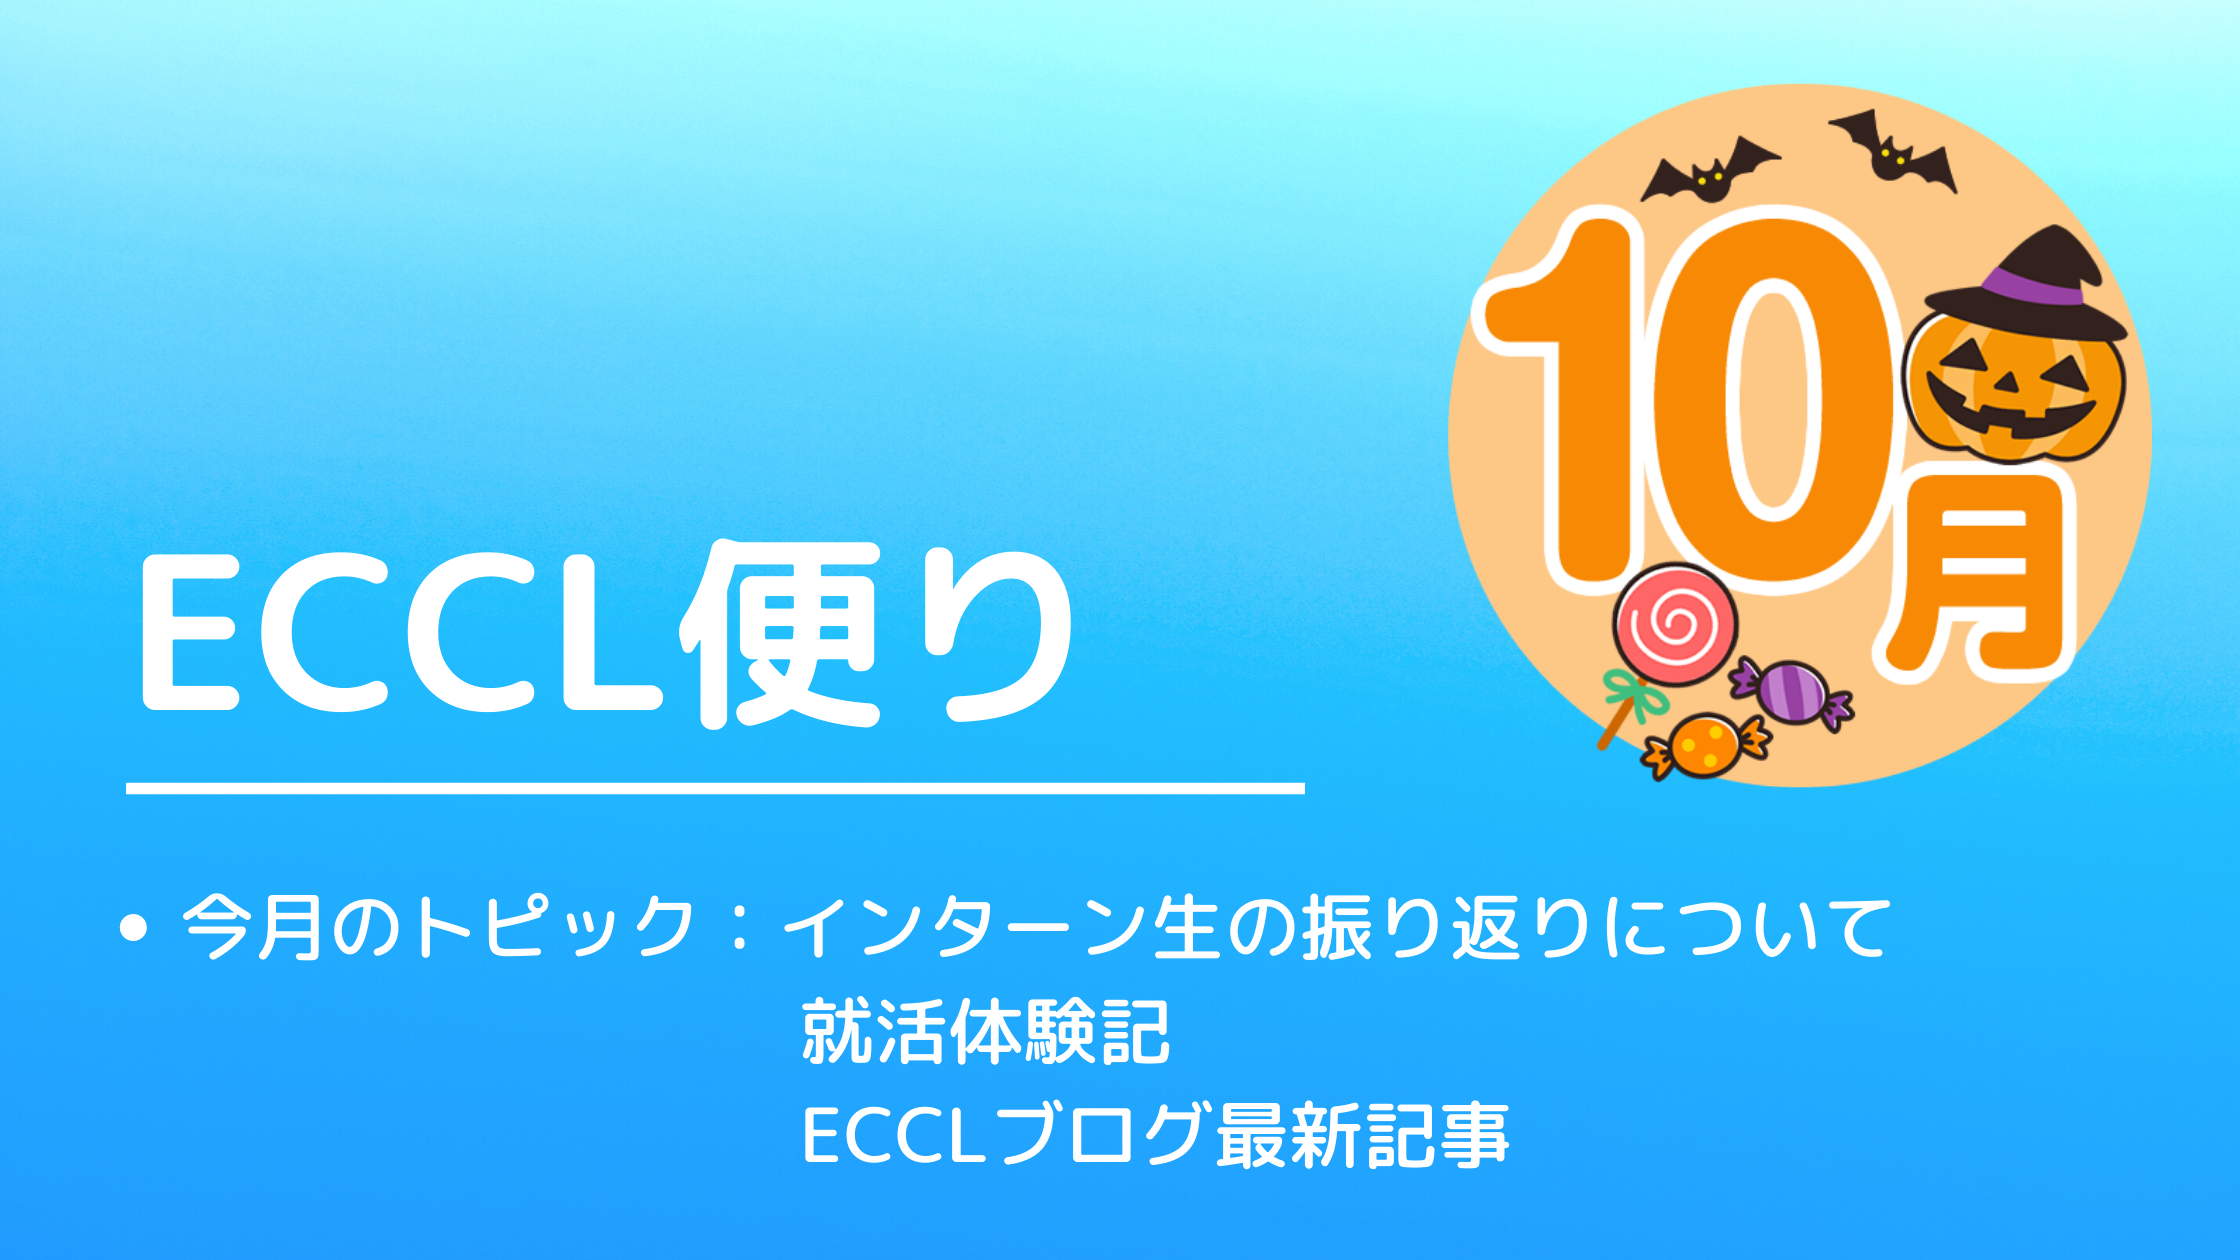 ECCL便り10月号♪